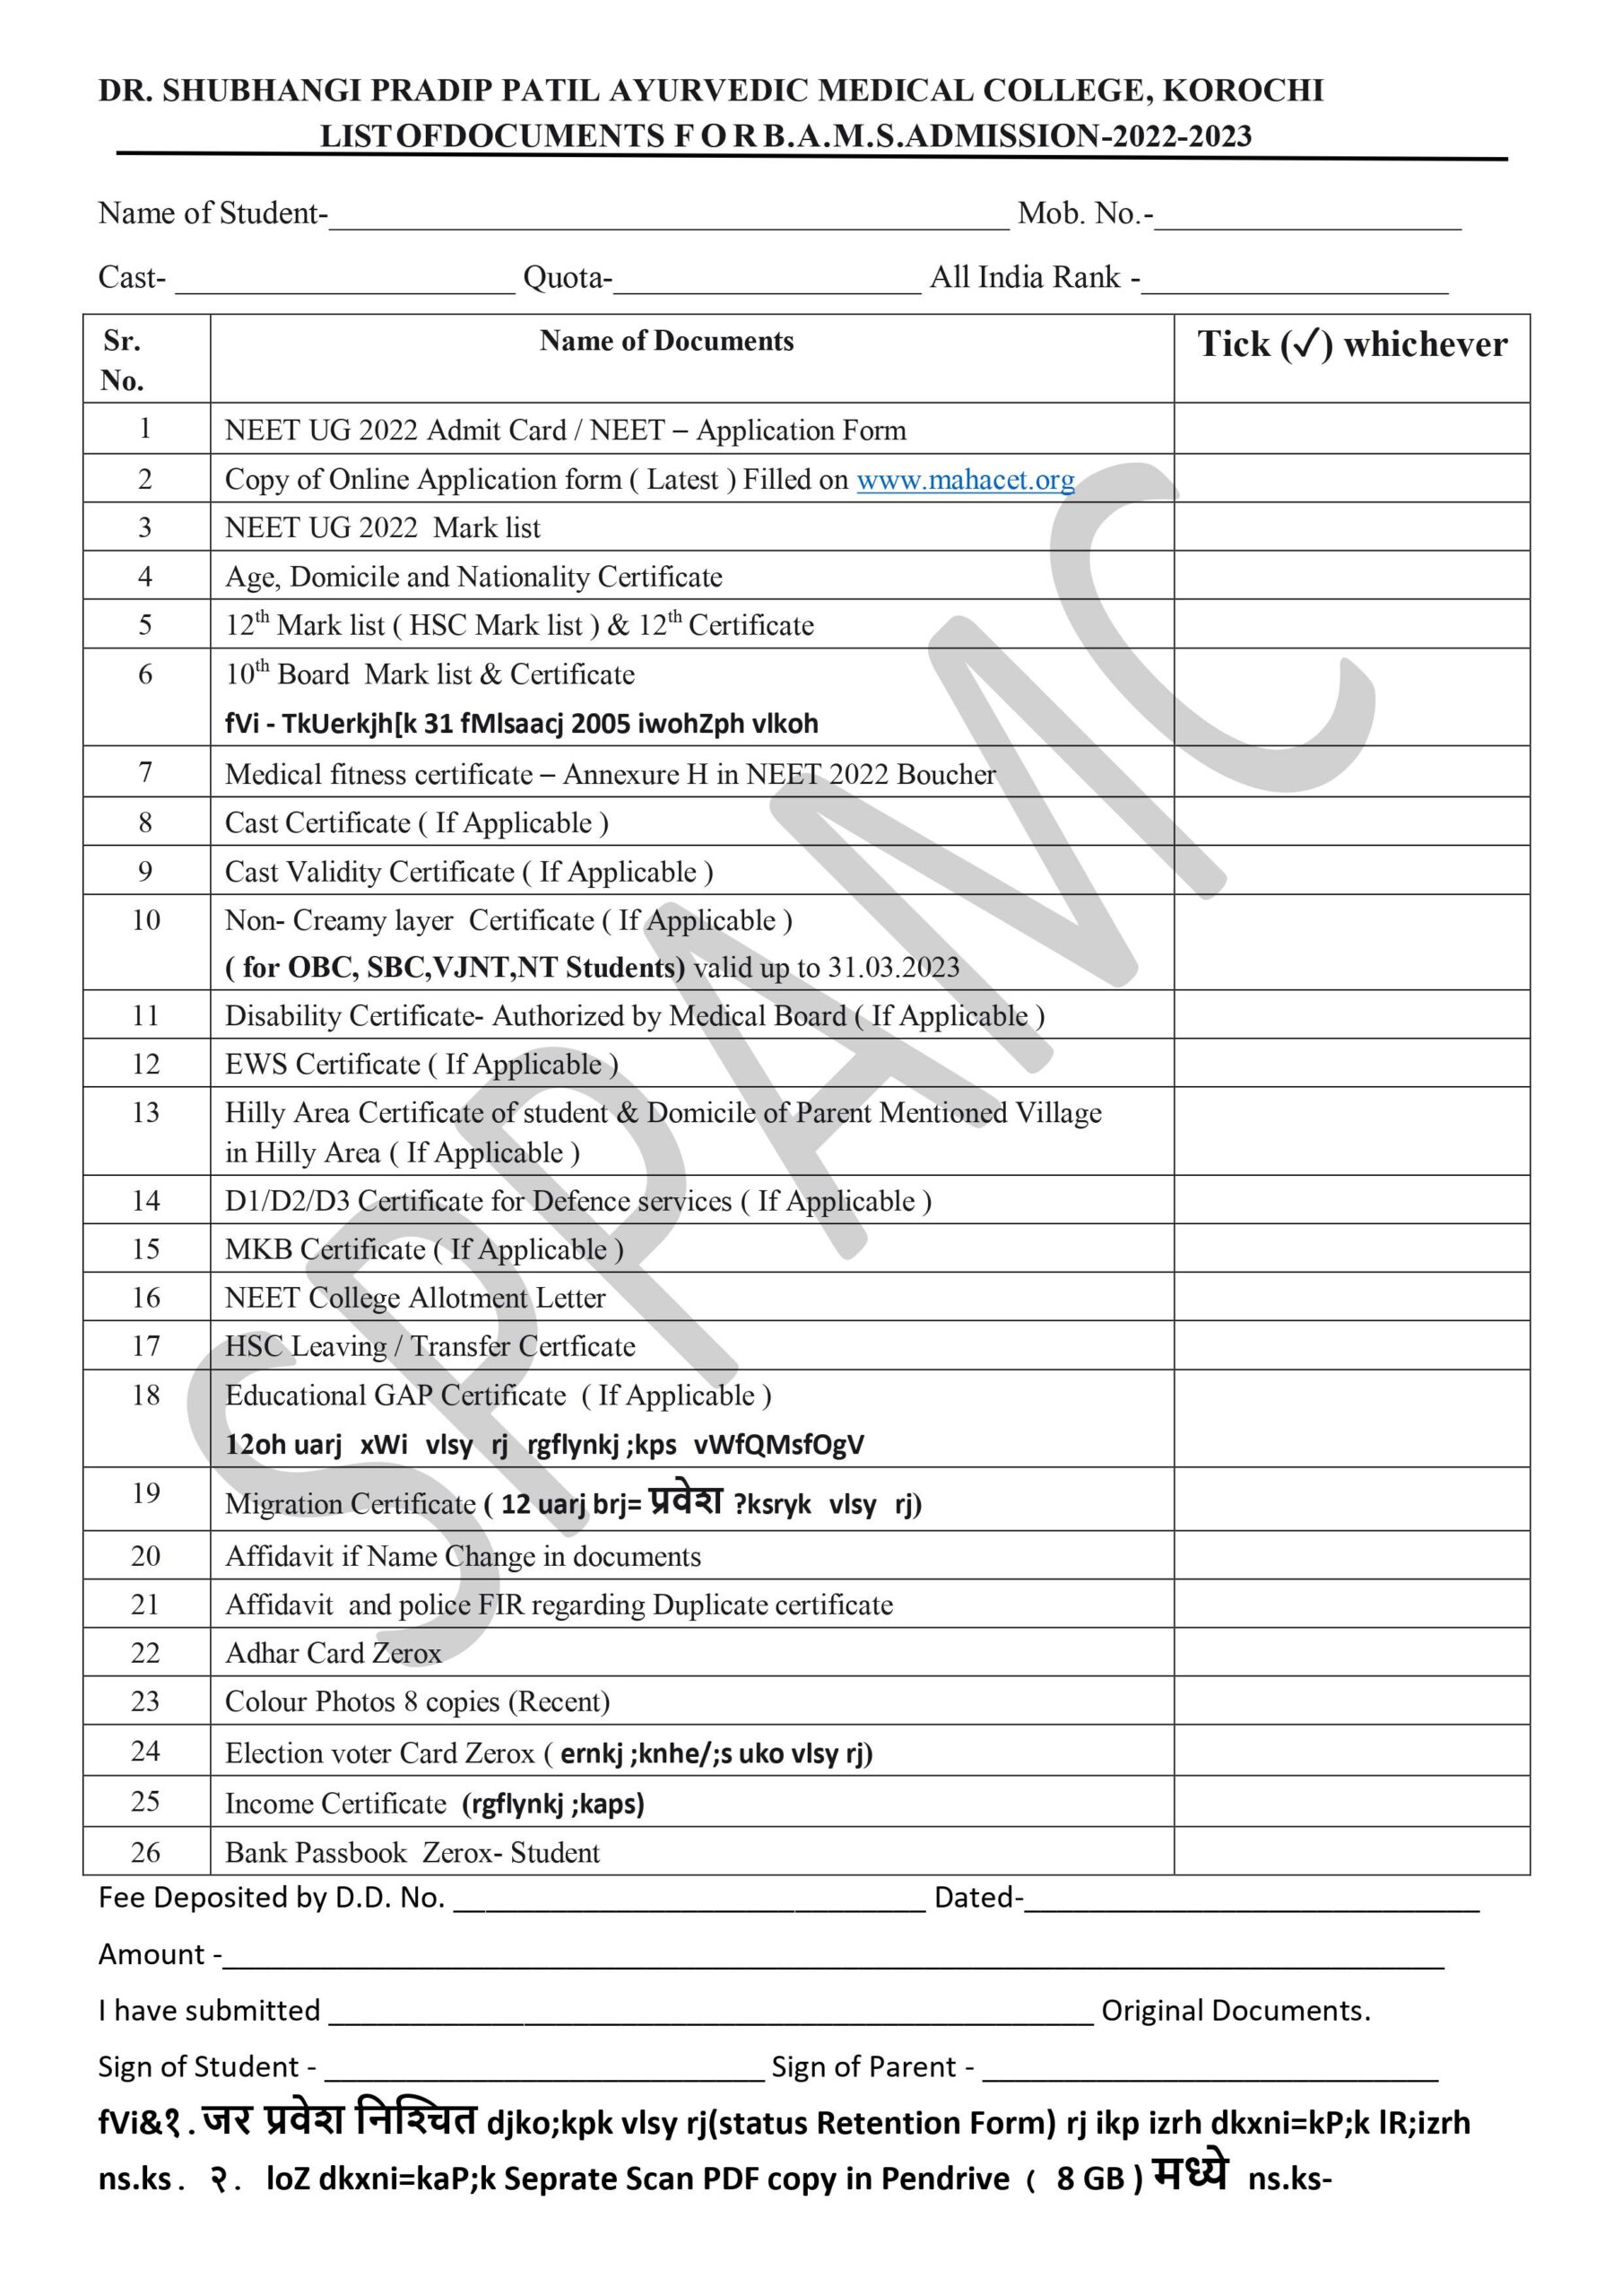 BAMS documents list pdf jpg